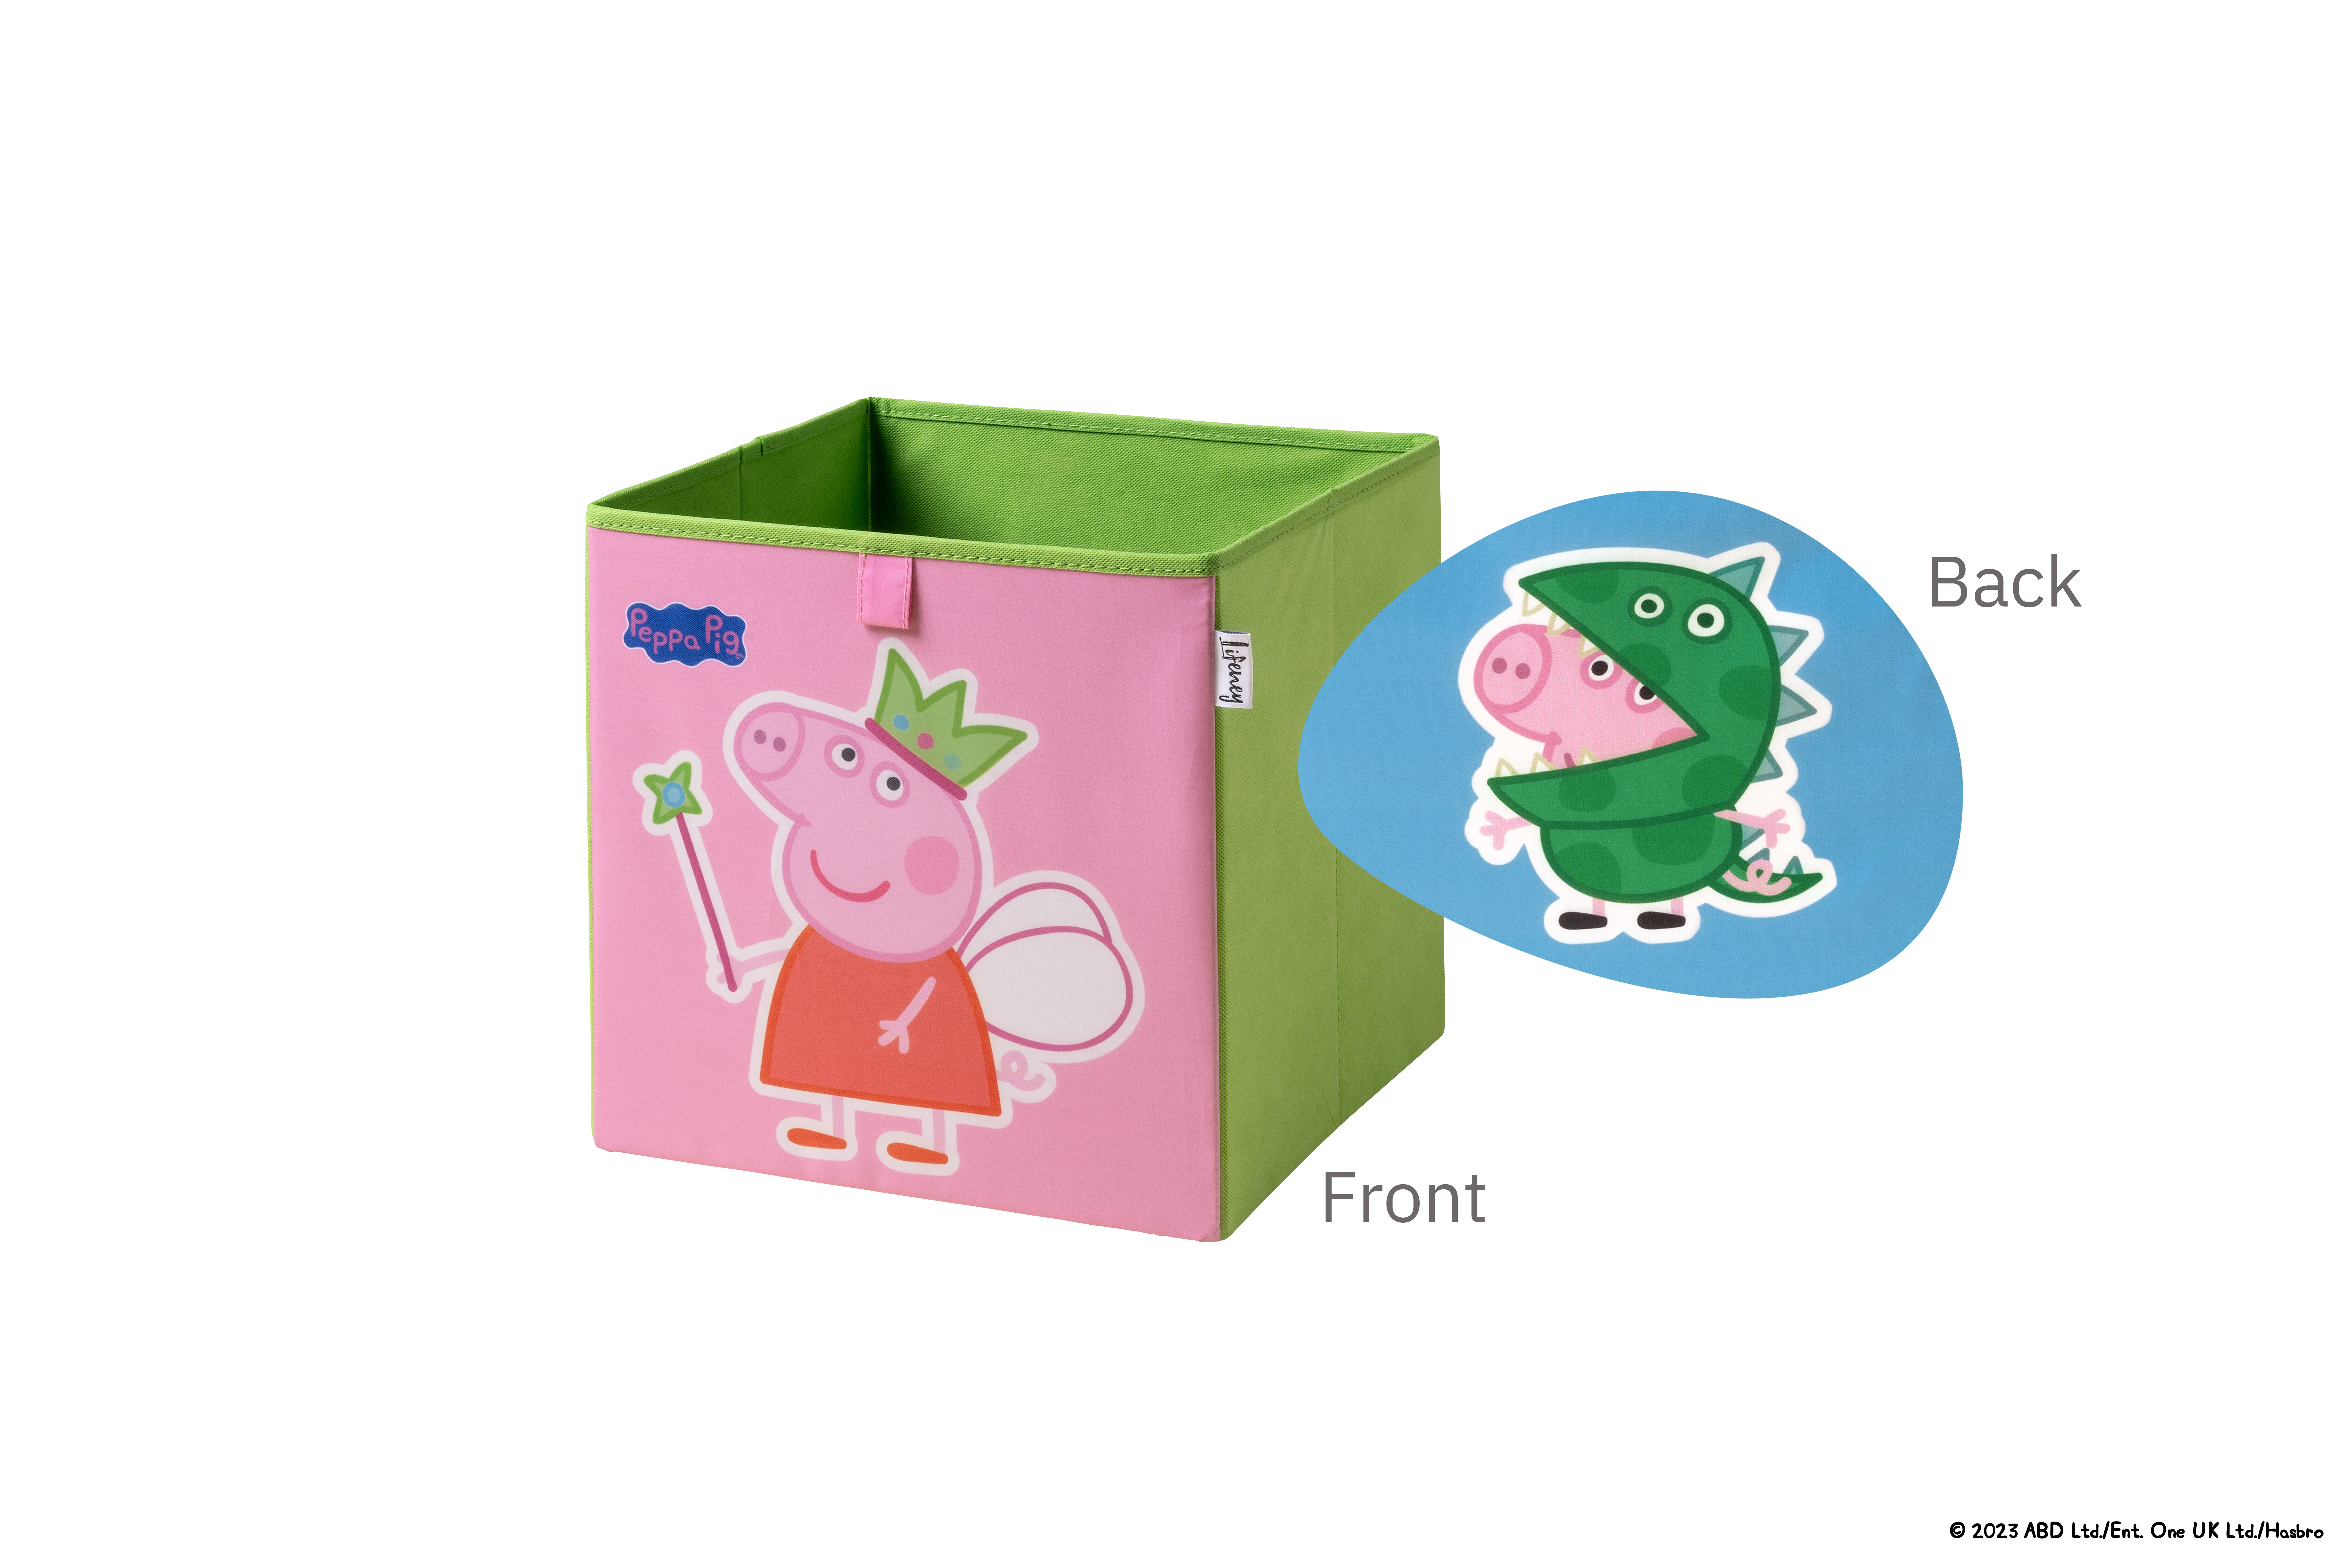 Lifeney - Caja de Almacenamiento con Dos Motivos: Hada y George - Ideal para Juguetes, Ropa y Más - Diseño de Peppa Pig - 5 Años de Garantía